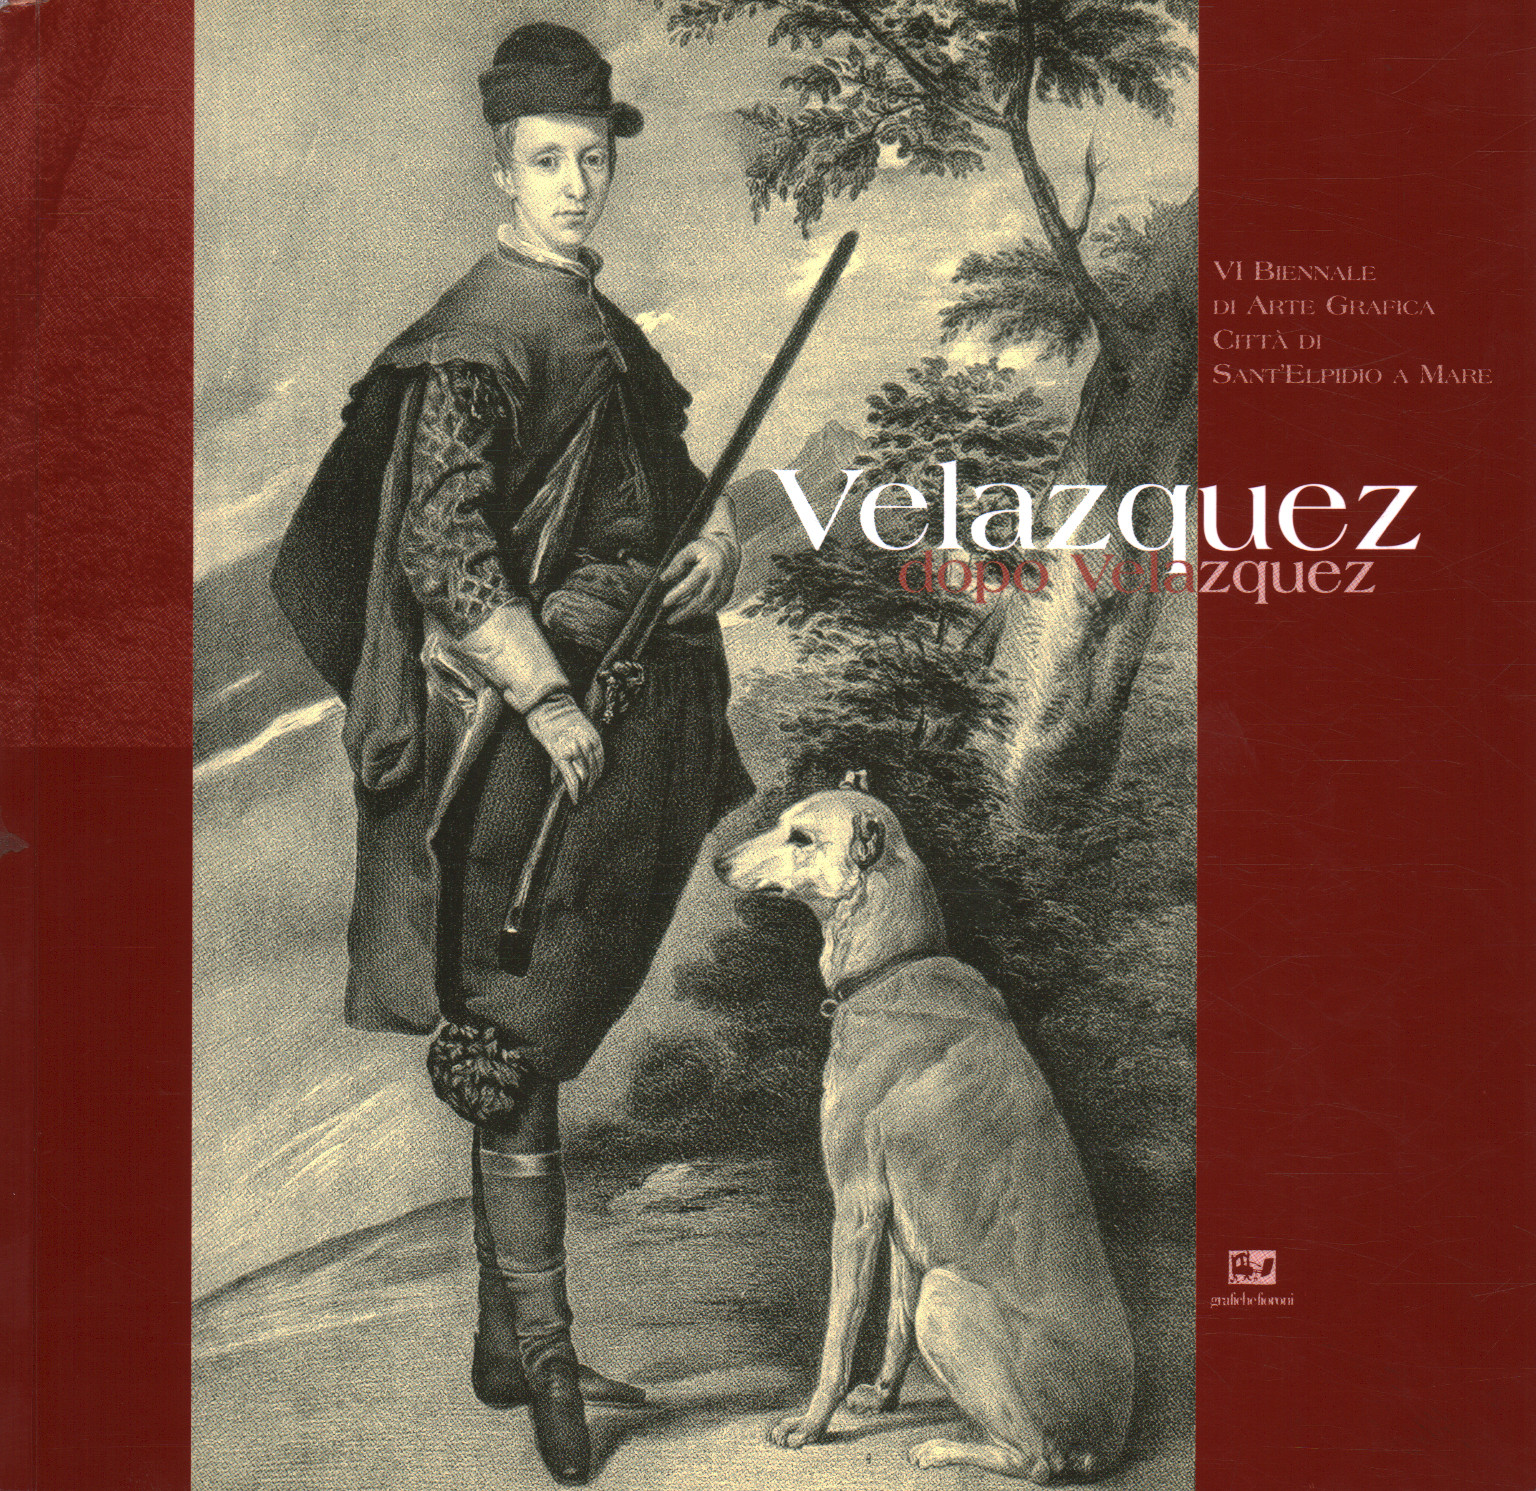 Velazquez after Velazquez